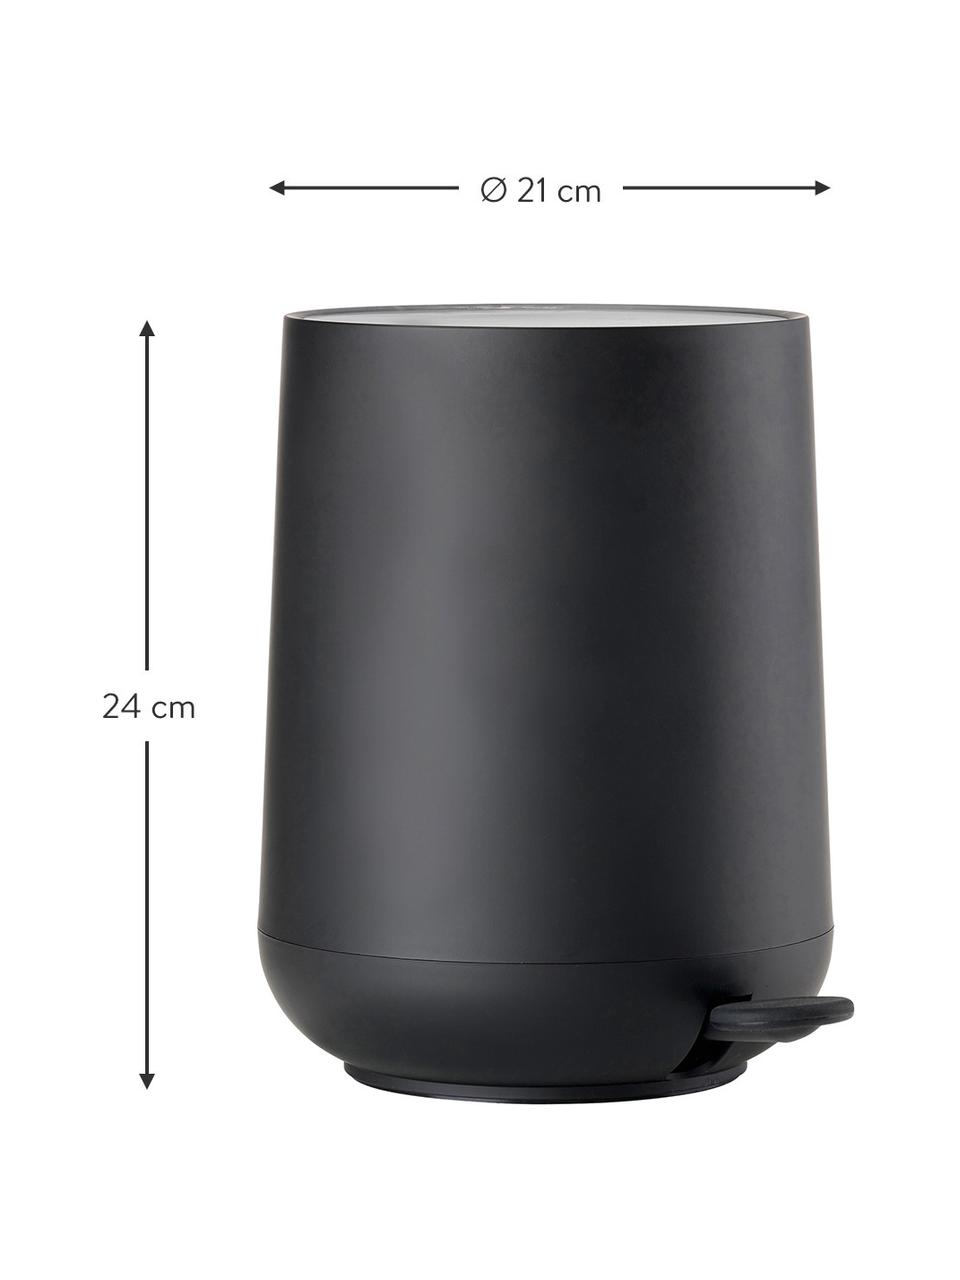 Afvalemmer Nova met softmotion deksel in zwart, ABS-kunststof, Zwart, 5 L